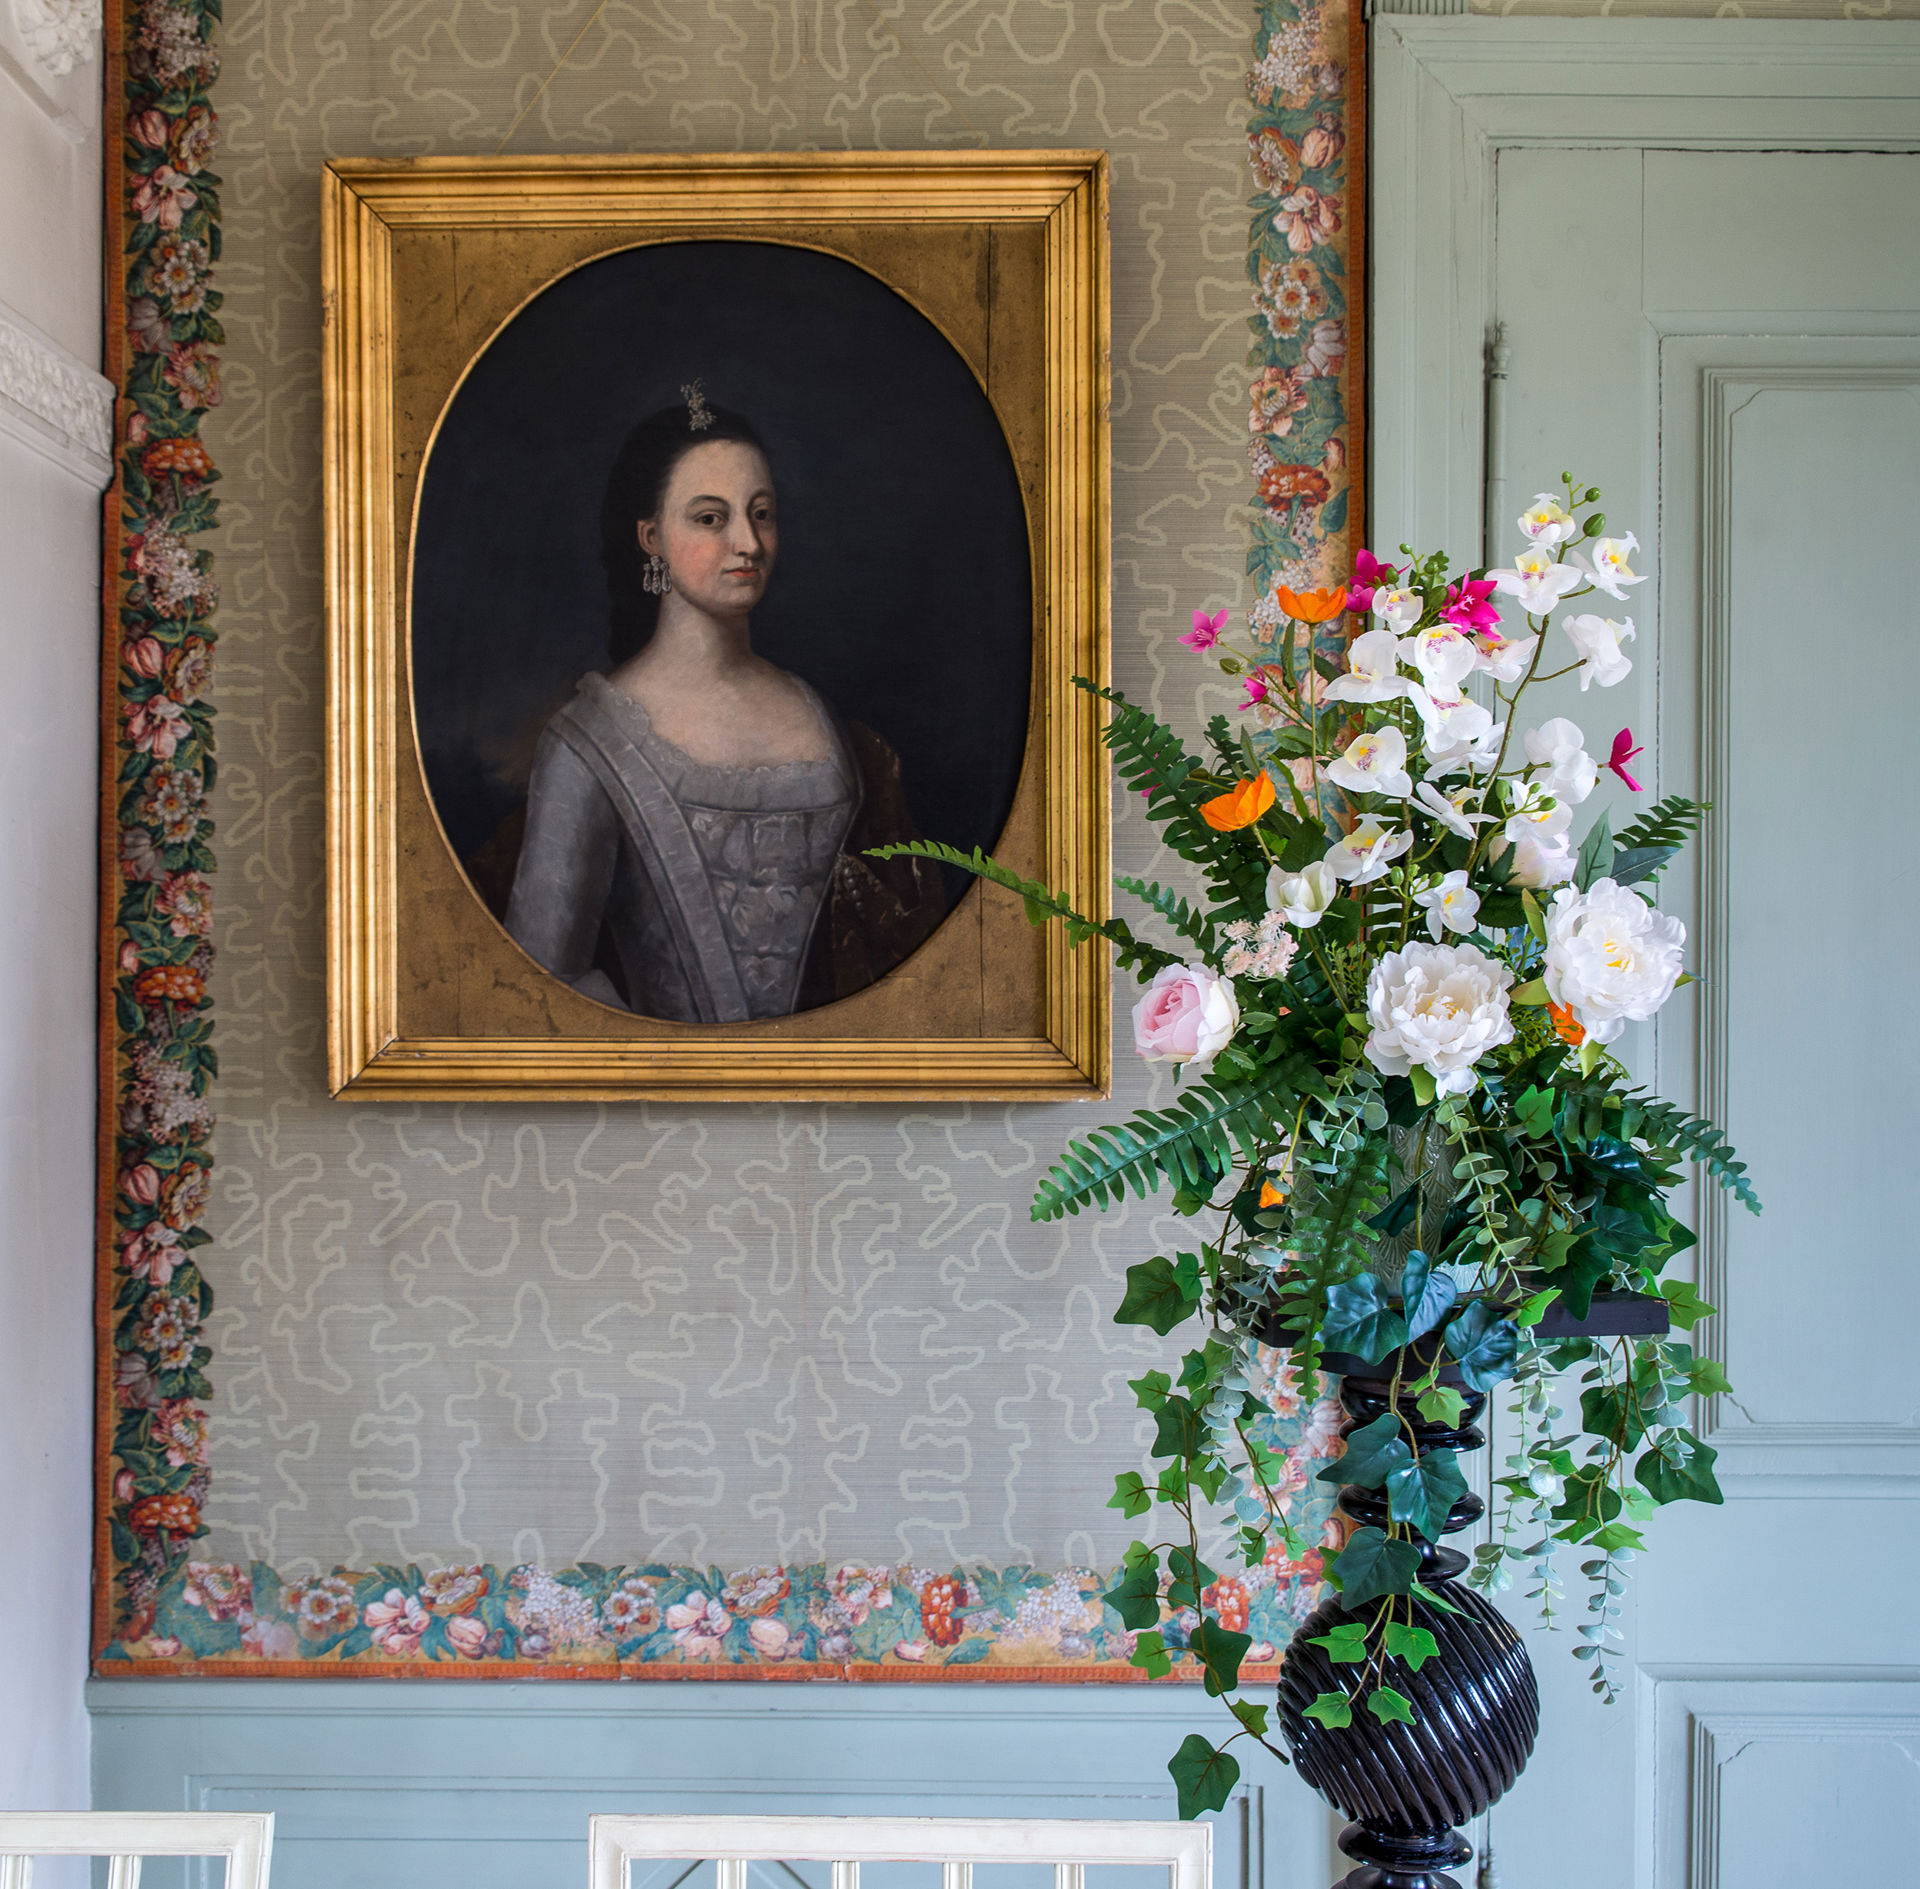 Blomsteroppsats og et gammelt portrett av en ung kvinne.